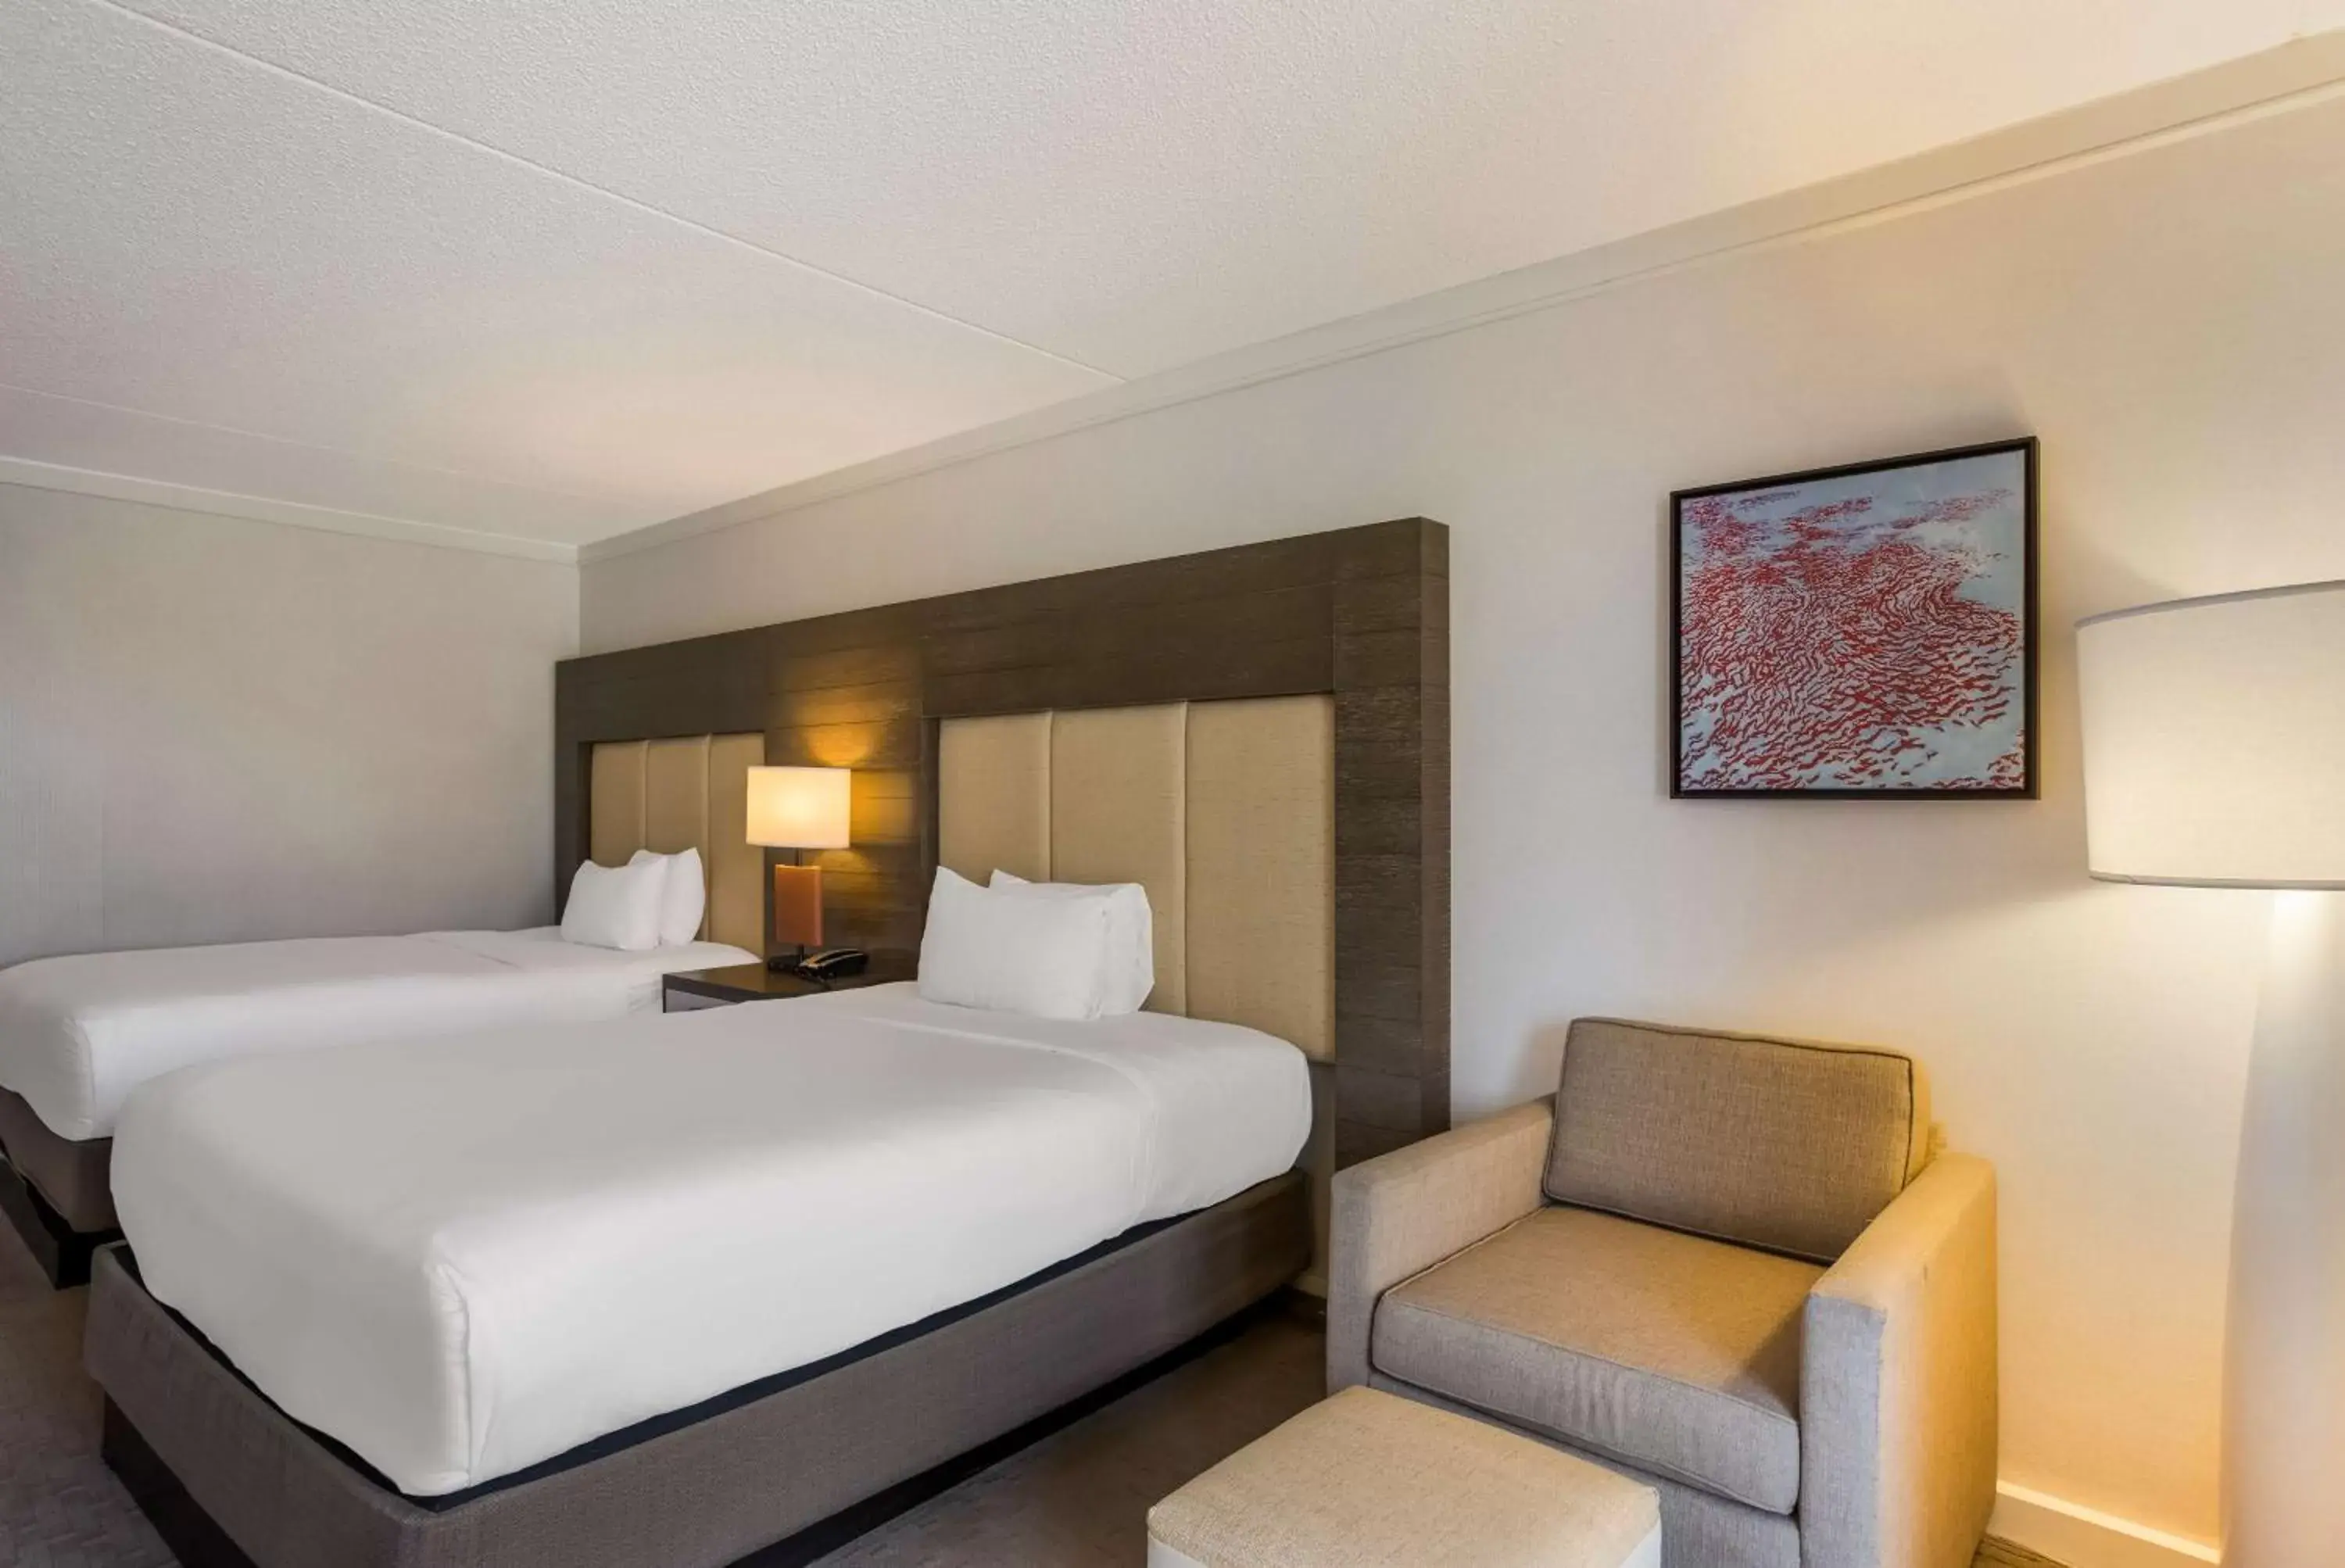 Bedroom in Sonesta Resort Hilton Head Island